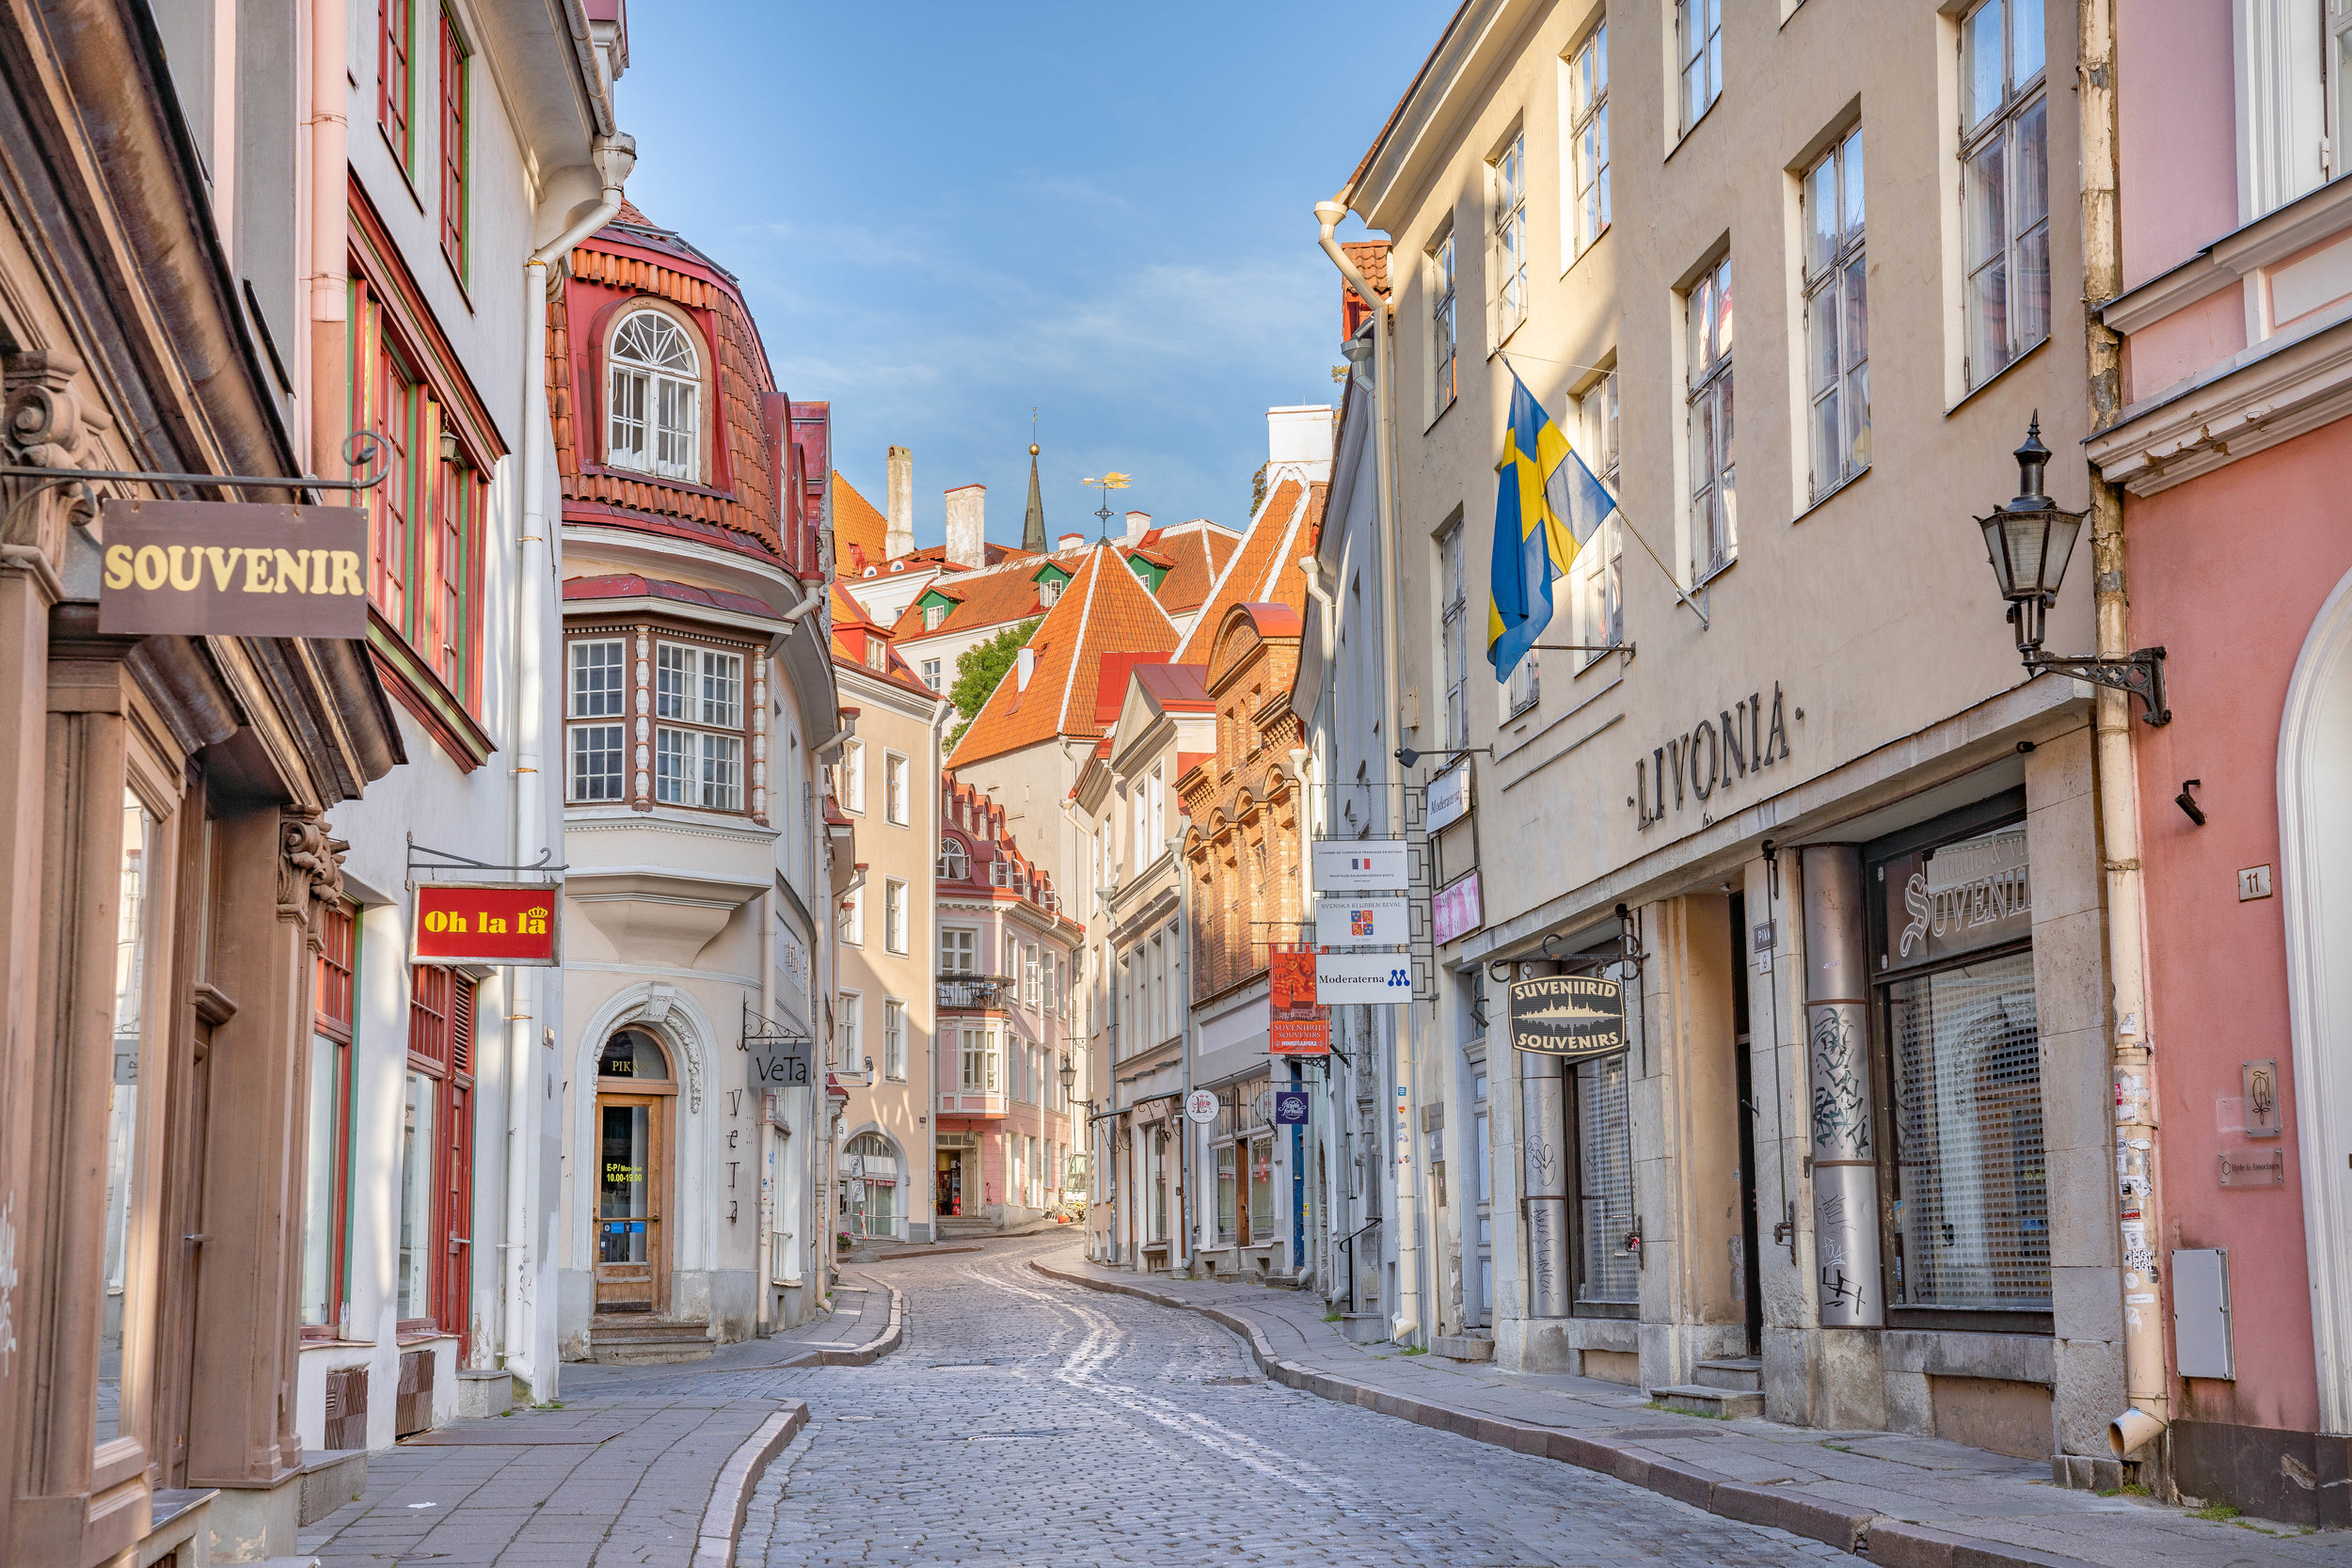 Old Town Tallinn, Estonia